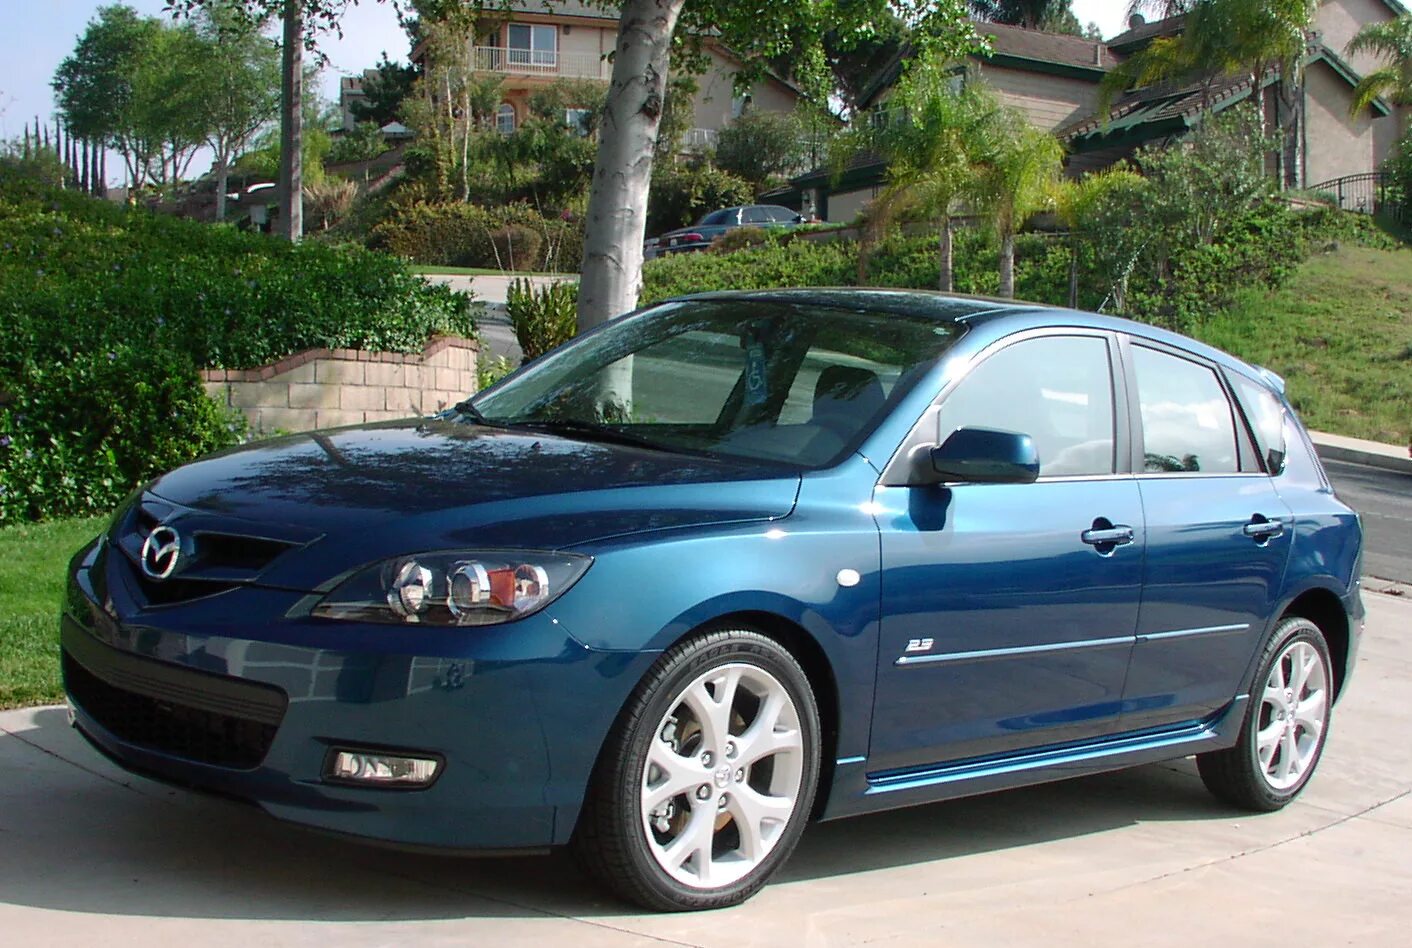 Mazda 3 2007. Mazda 3 Hatchback 2007. Мазда 3 2007 хэтчбек 1.6. Мазда 3 седан 2007.